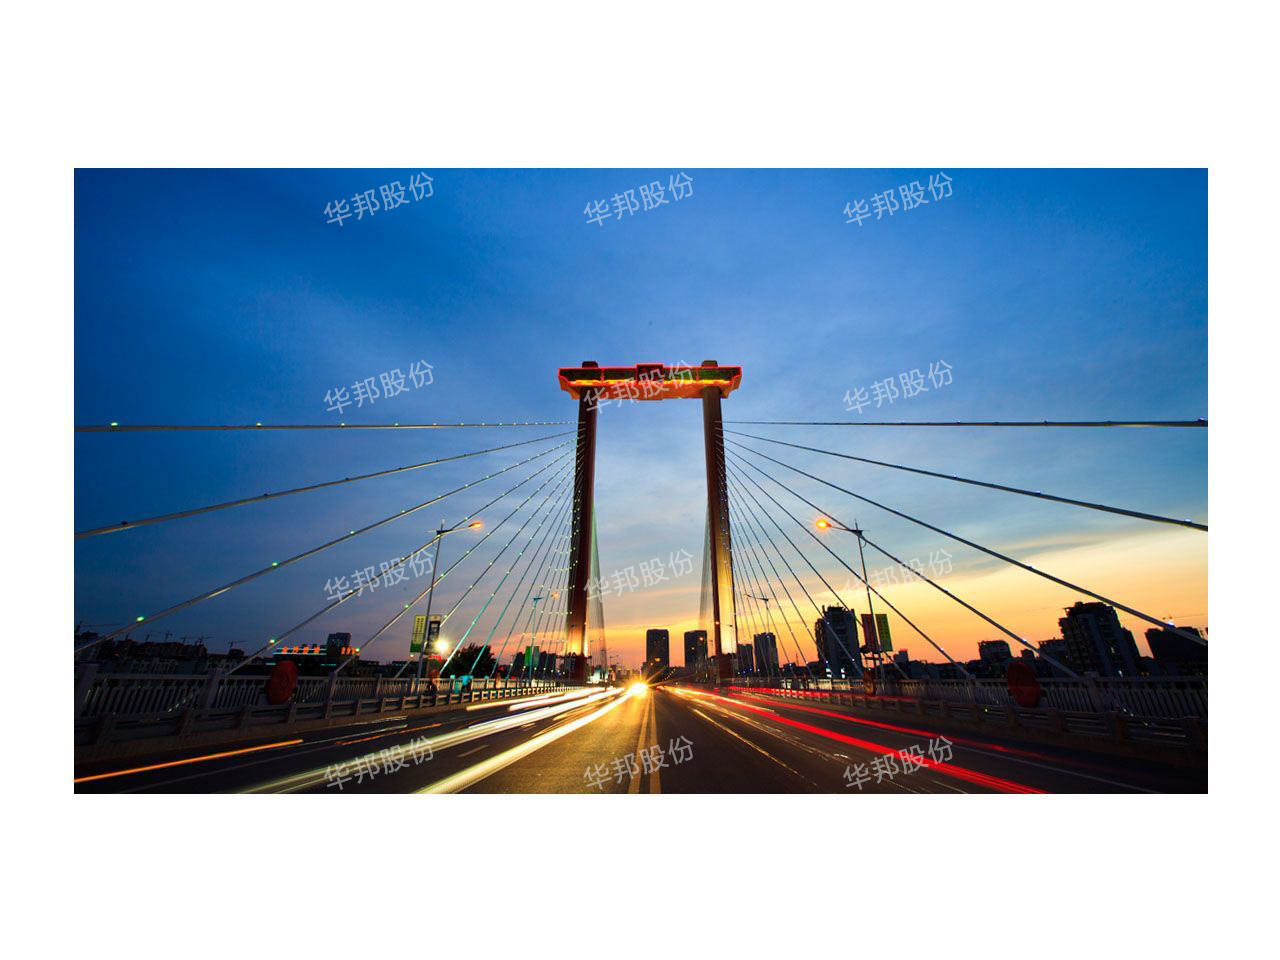 The ding tang bridge in hangzhou, zhejiang province